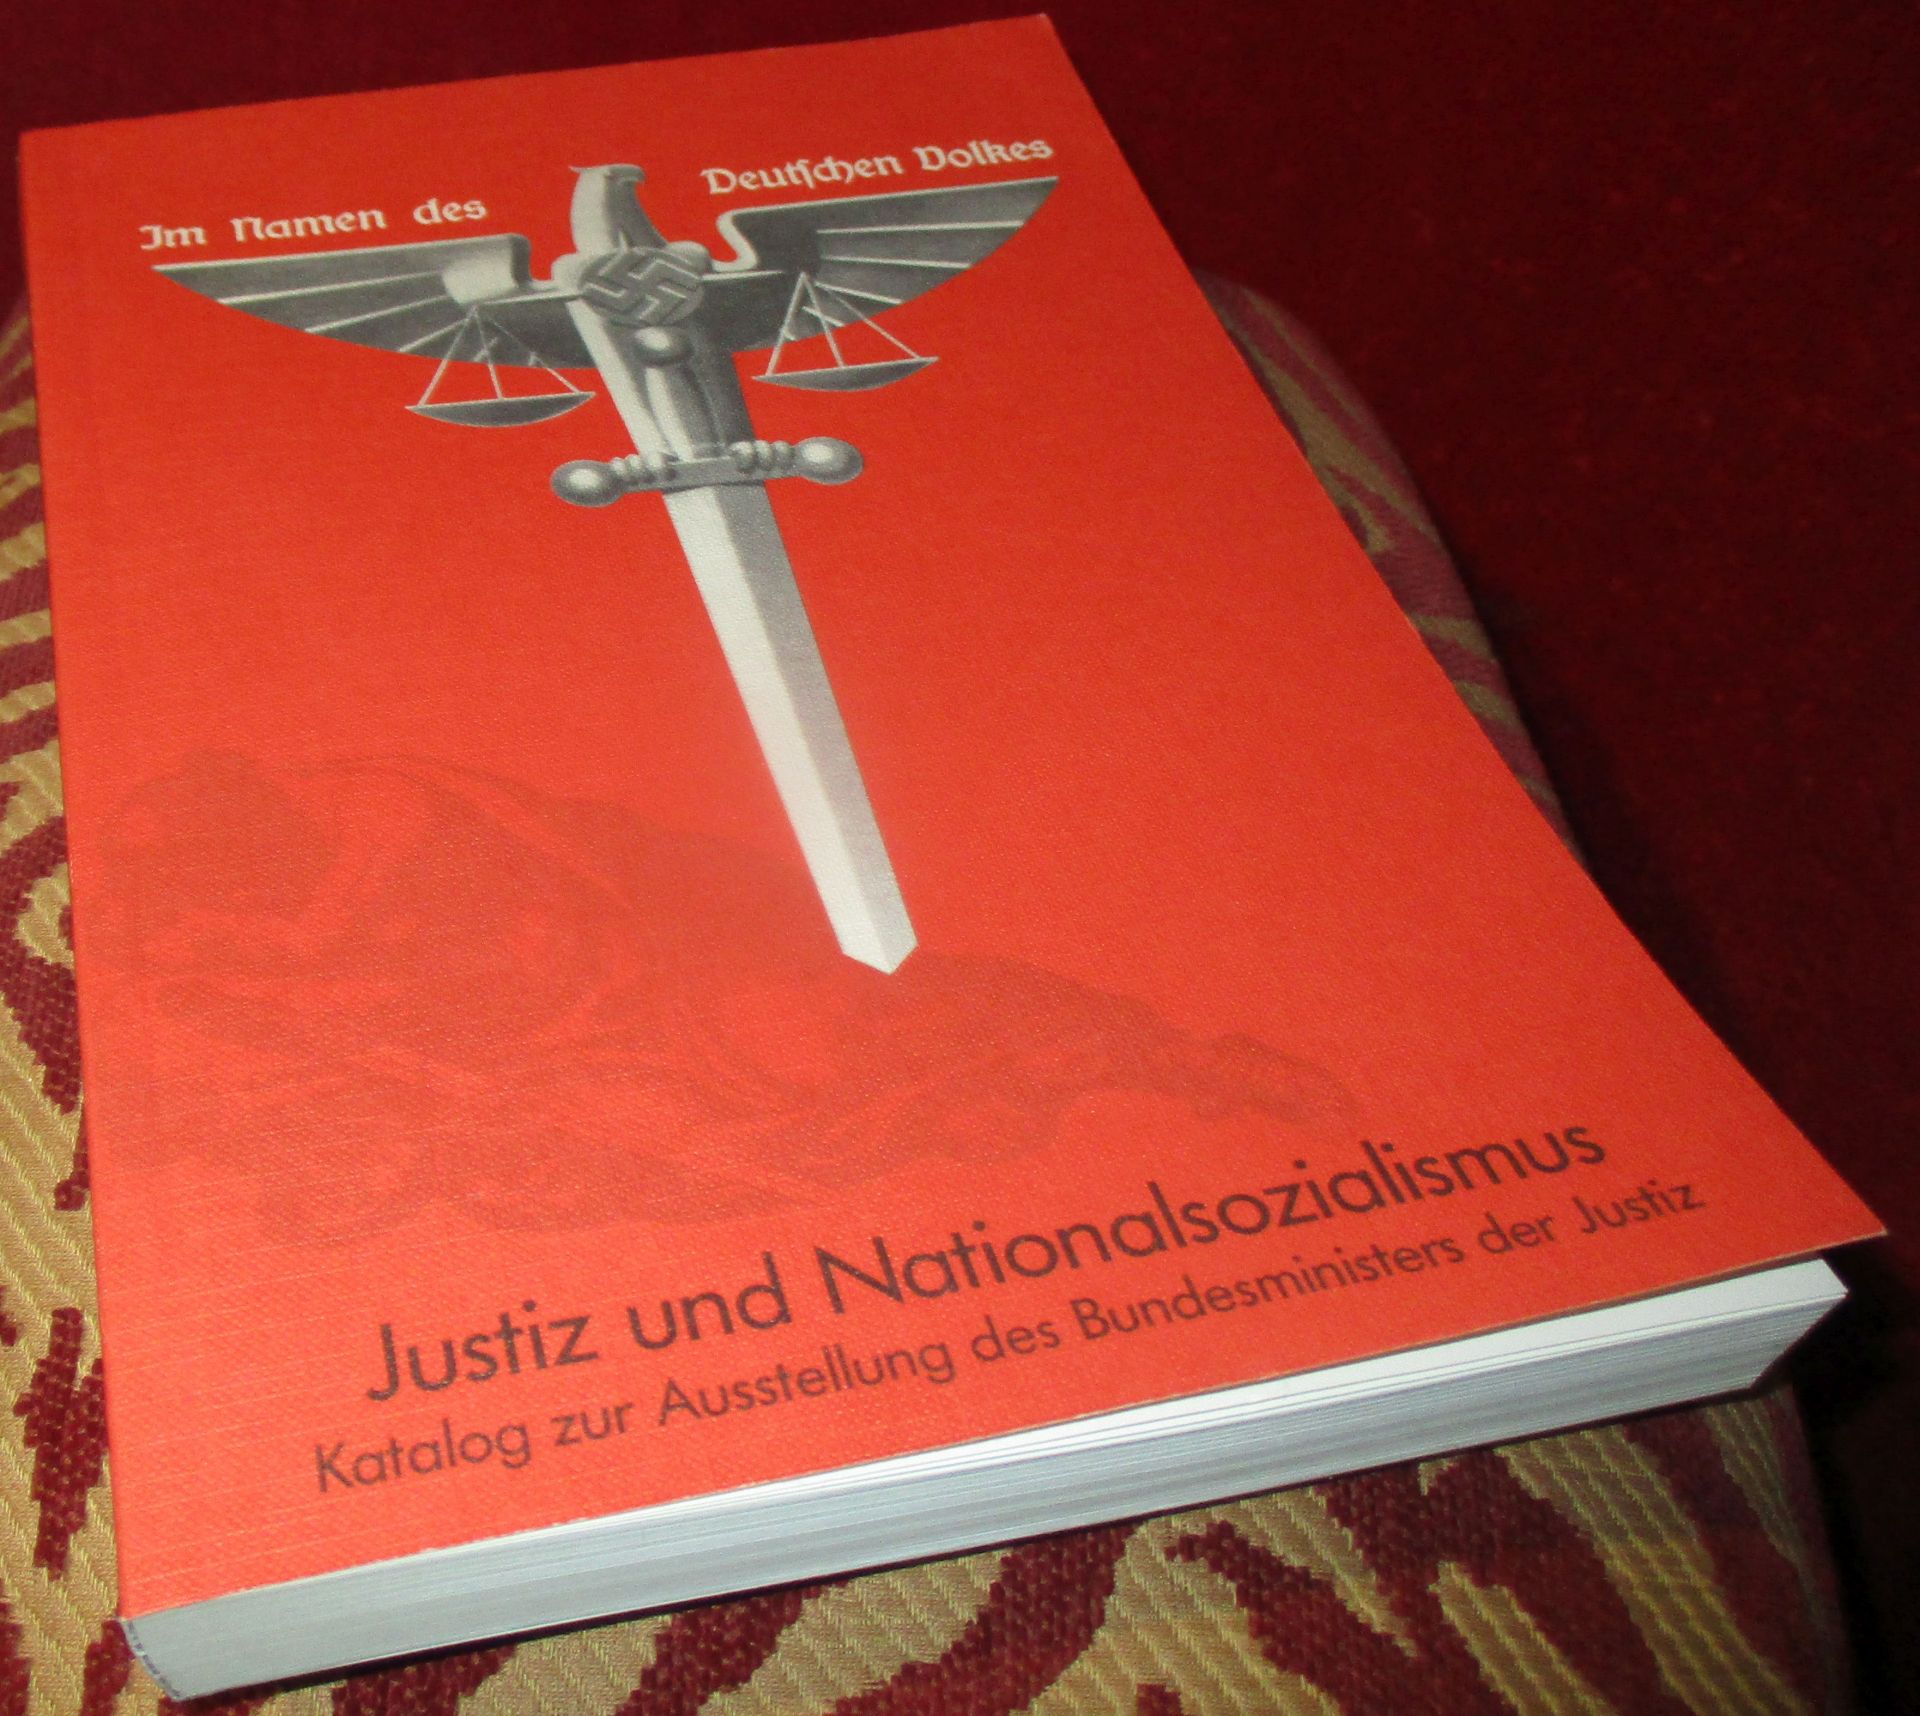 Im Namen des Deutschen Volkes. Justiz und Nationalsozialismus - Katalog zur Ausstellung des Bundesministers der Justiz